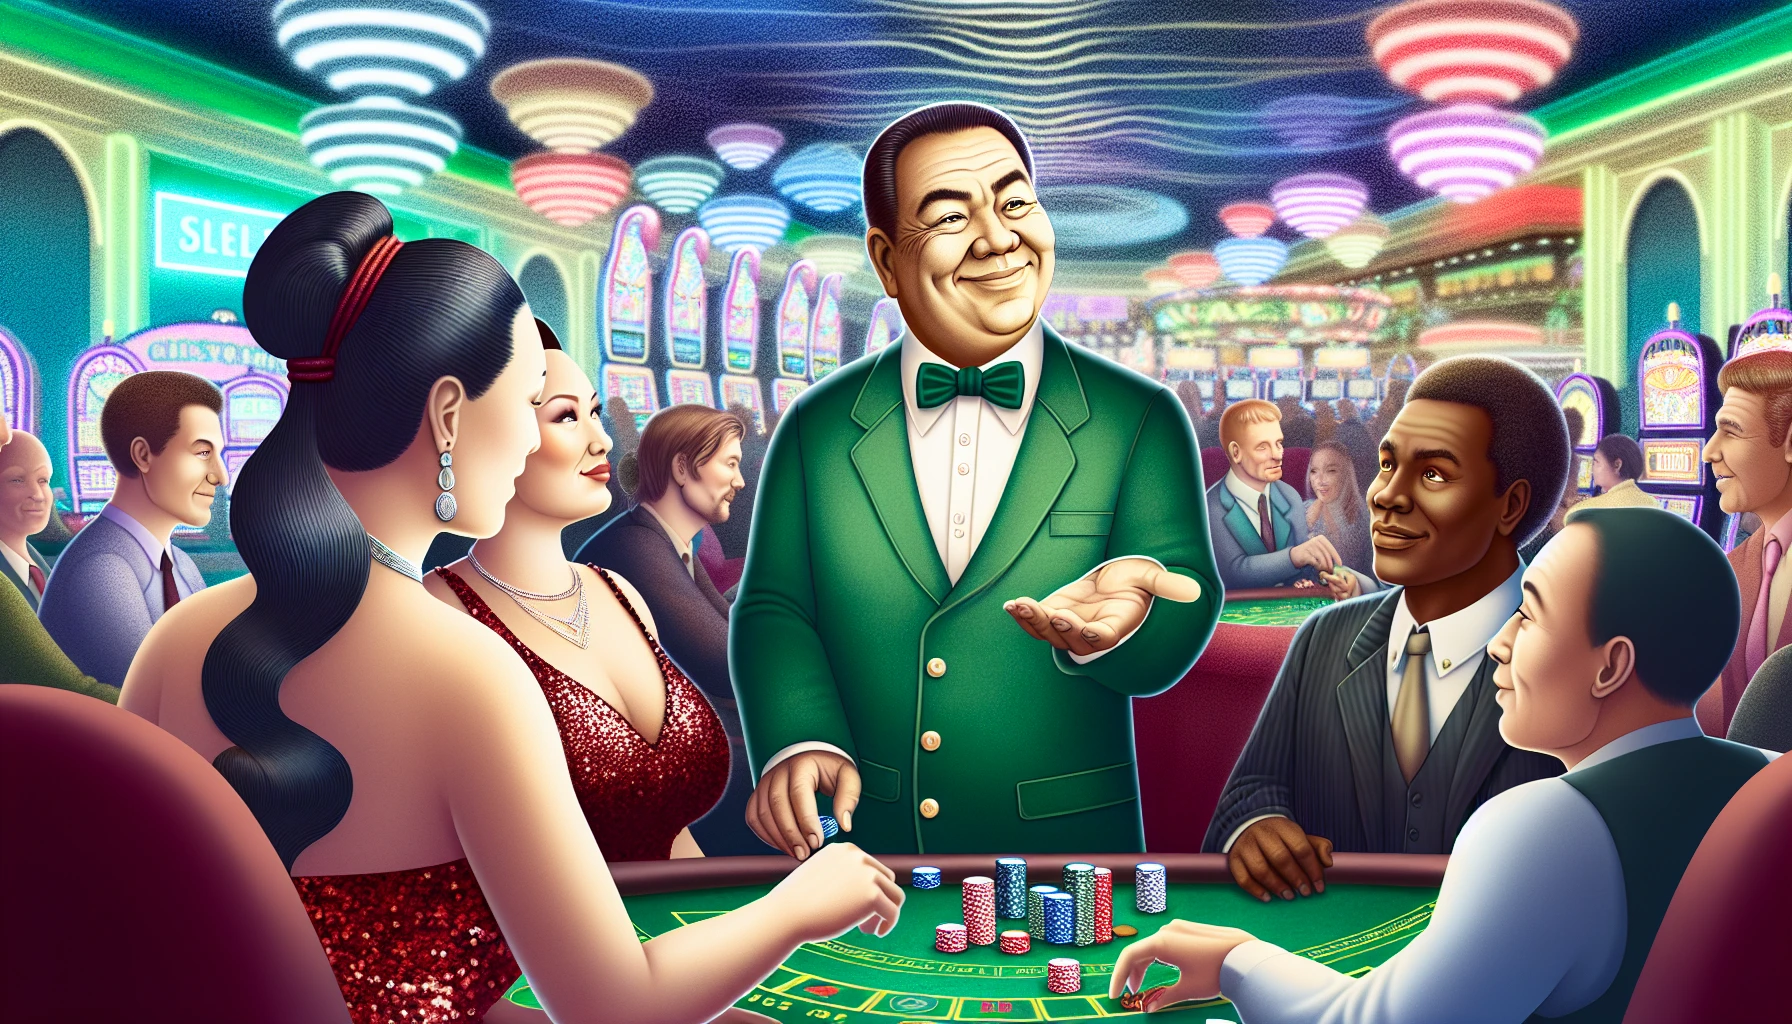 Casino dealer receiving tips